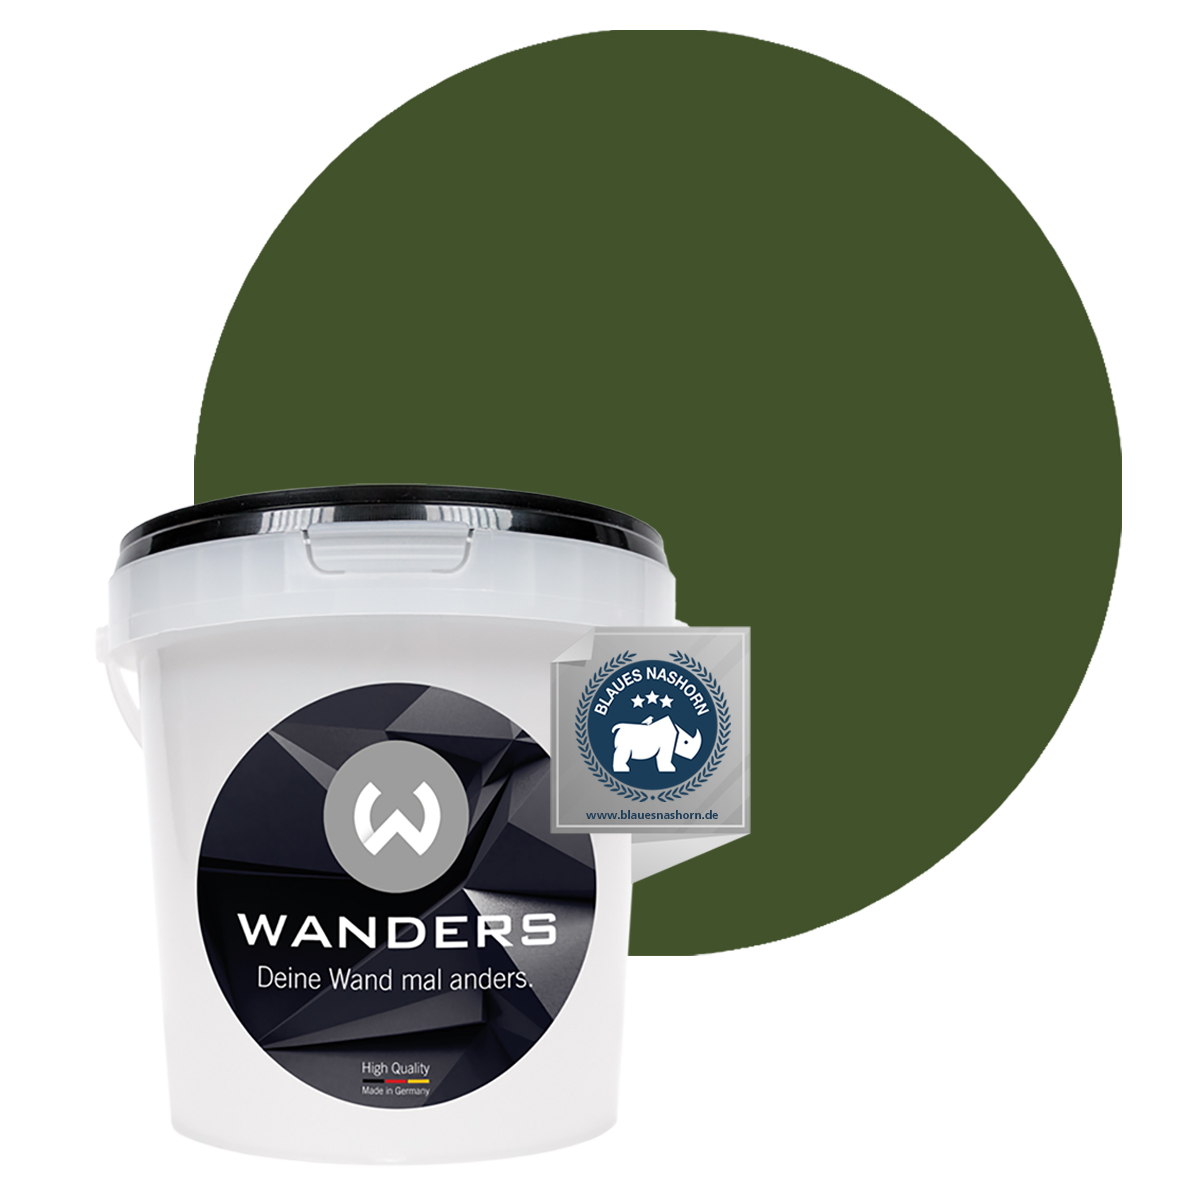 Wanders Tafelfarbe Khaki-Grün 1L mit Farbe 2018.06.07